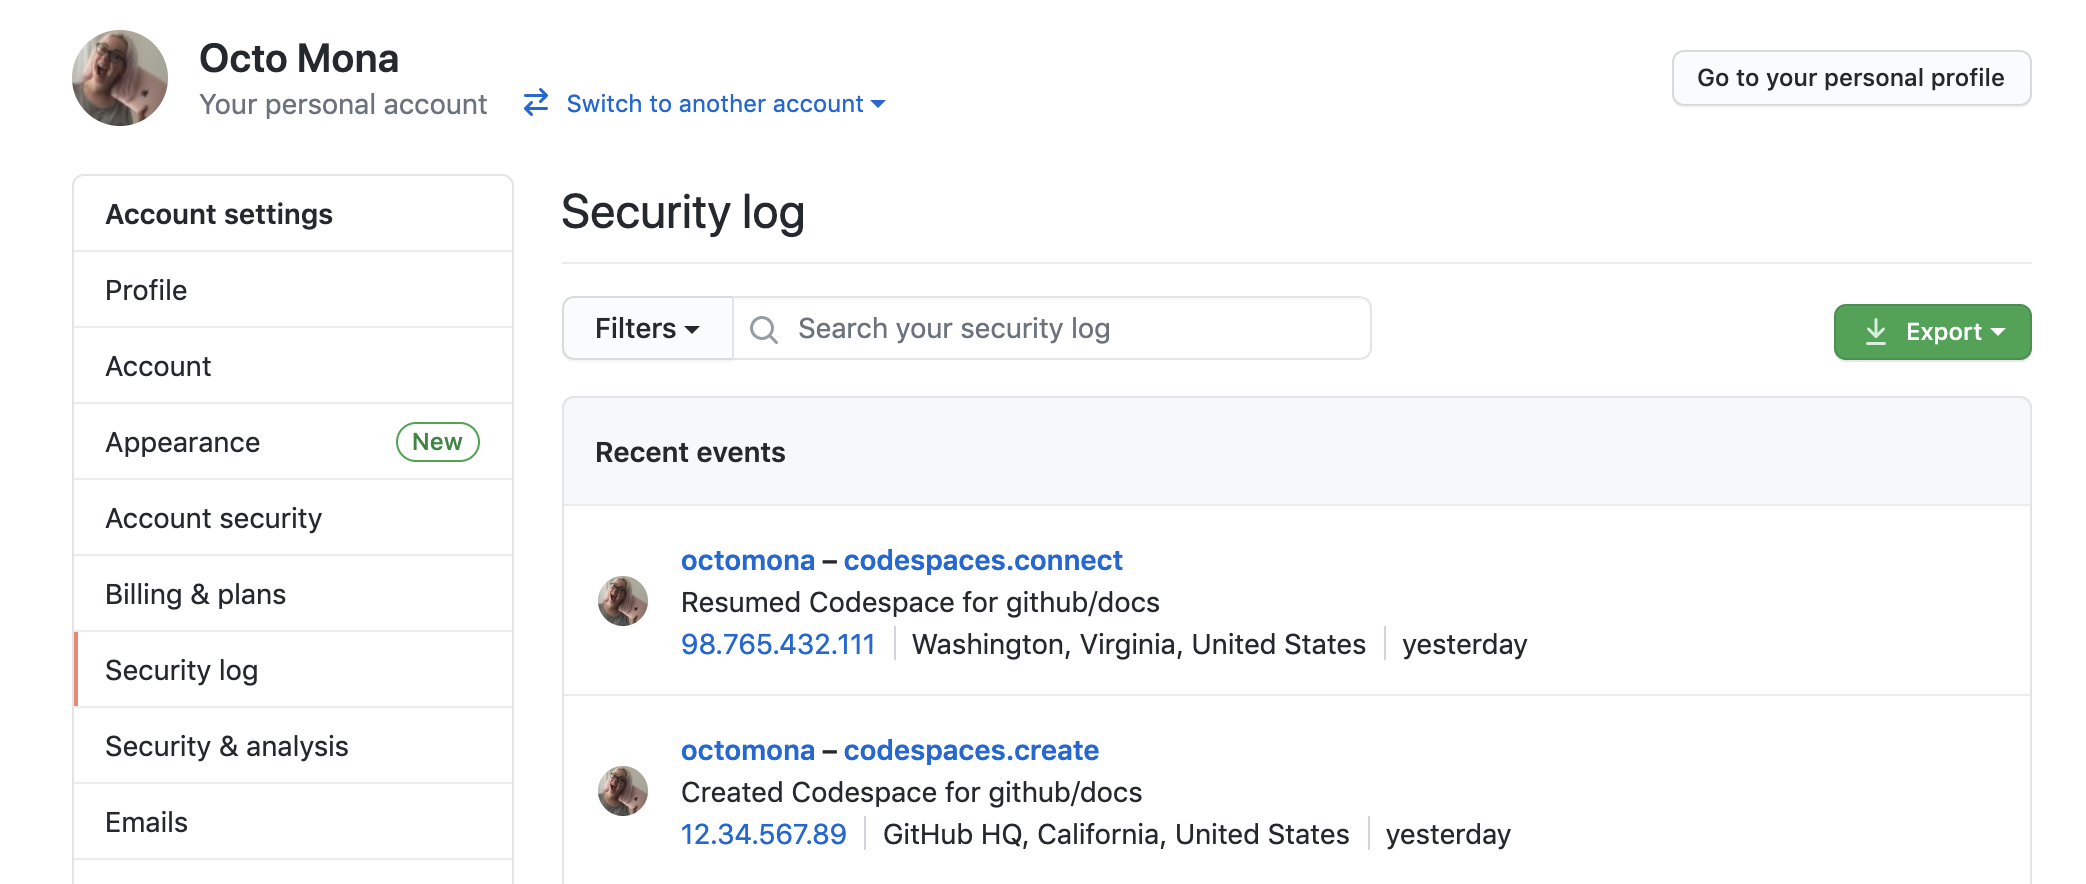 "최근 이벤트" 목록을 보여 주는 "Octo Mona" 사용자의 "보안 로그" 페이지 스크린샷